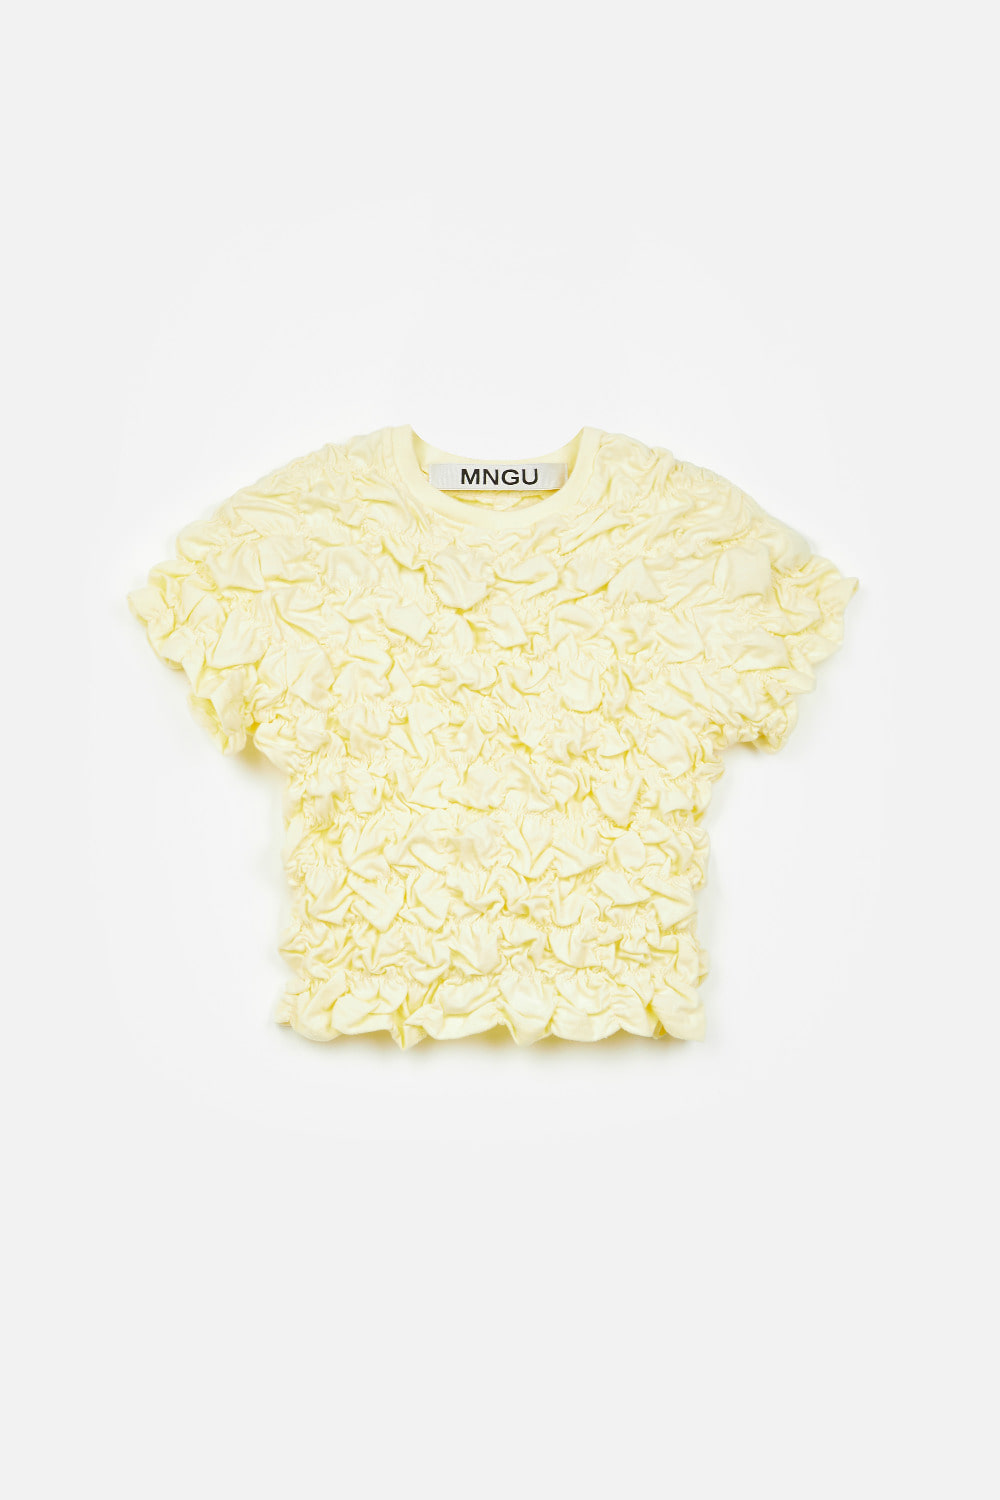 [-50%] 크롭티드 크링클 티셔츠 IN 레몬-크림